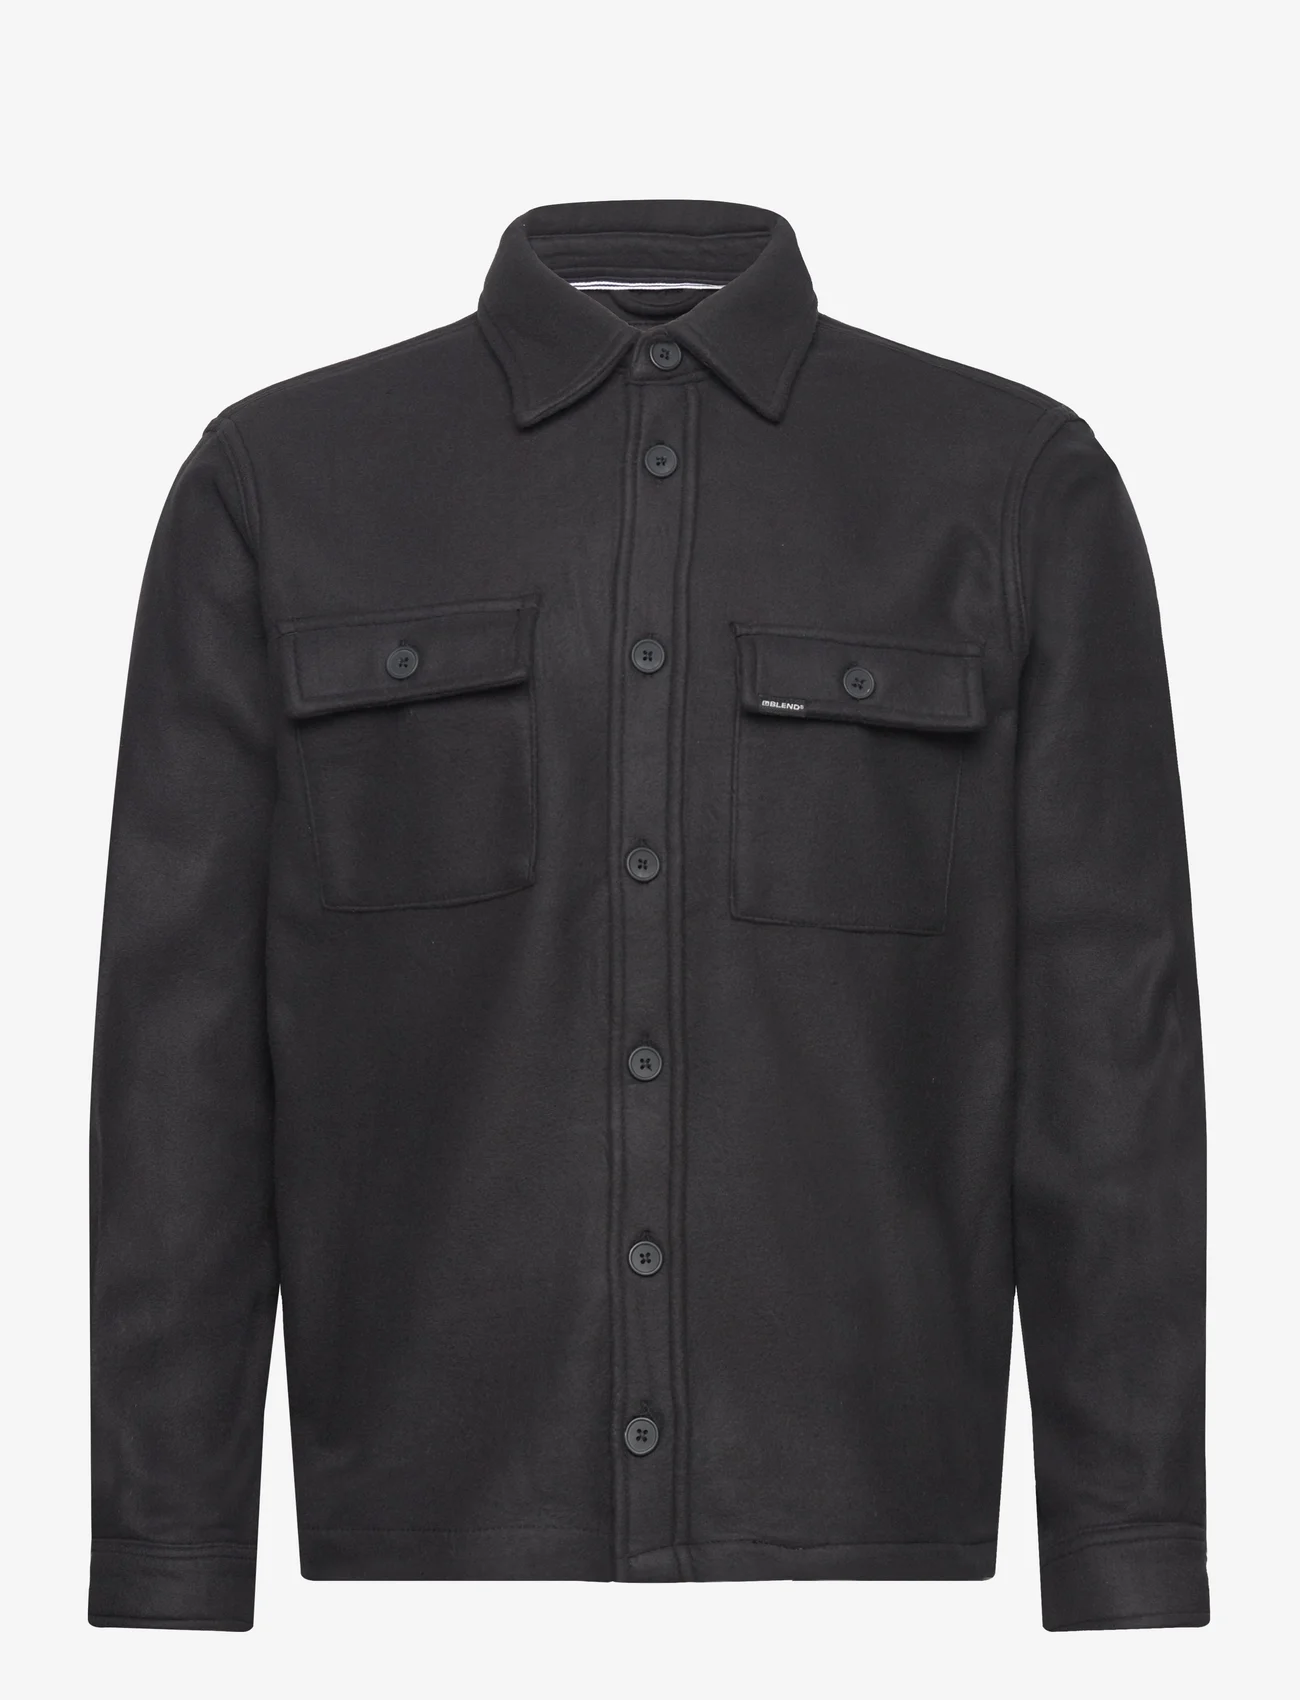 Blend - Shirt - overshirts - black - 0